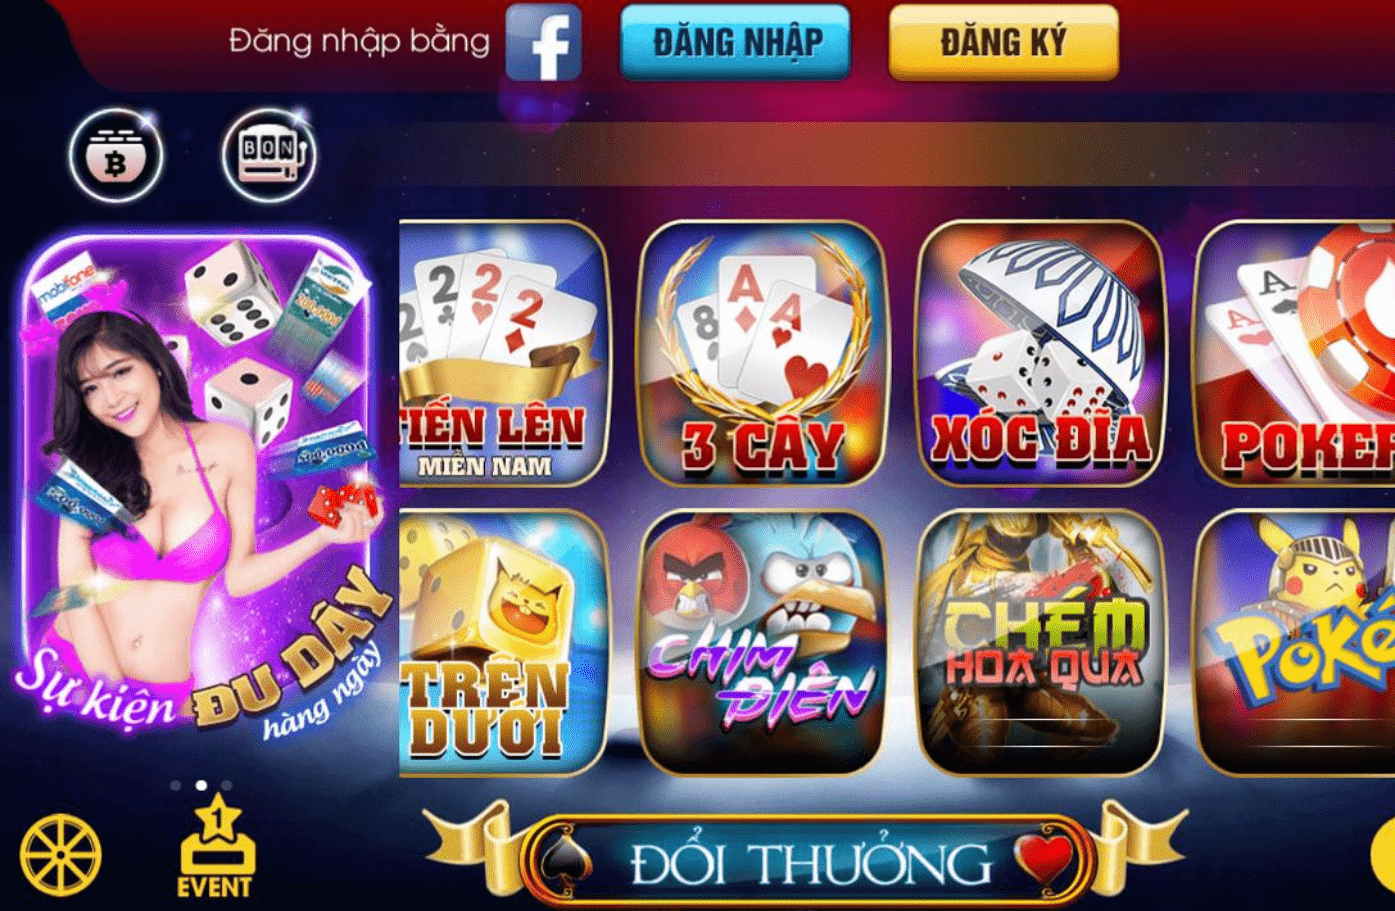 game bai doi thuong tang von.png 1